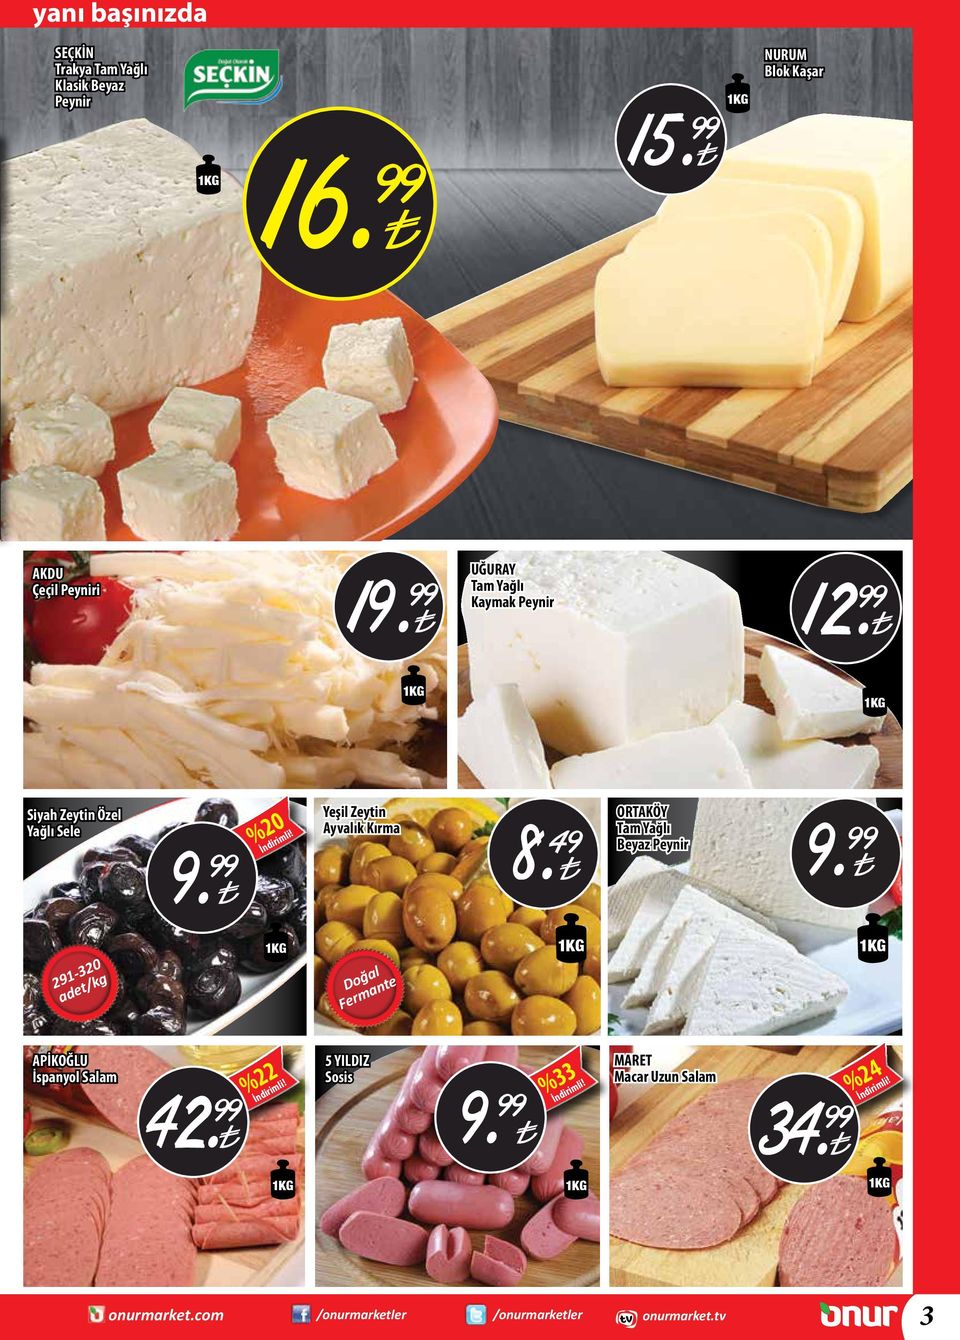 49 ORTAKÖY Tam Yağlı Beyaz Peynir 9. 291-320 adet/kg Doğal Fermante APİKOĞLU İspanyol Salam 42.